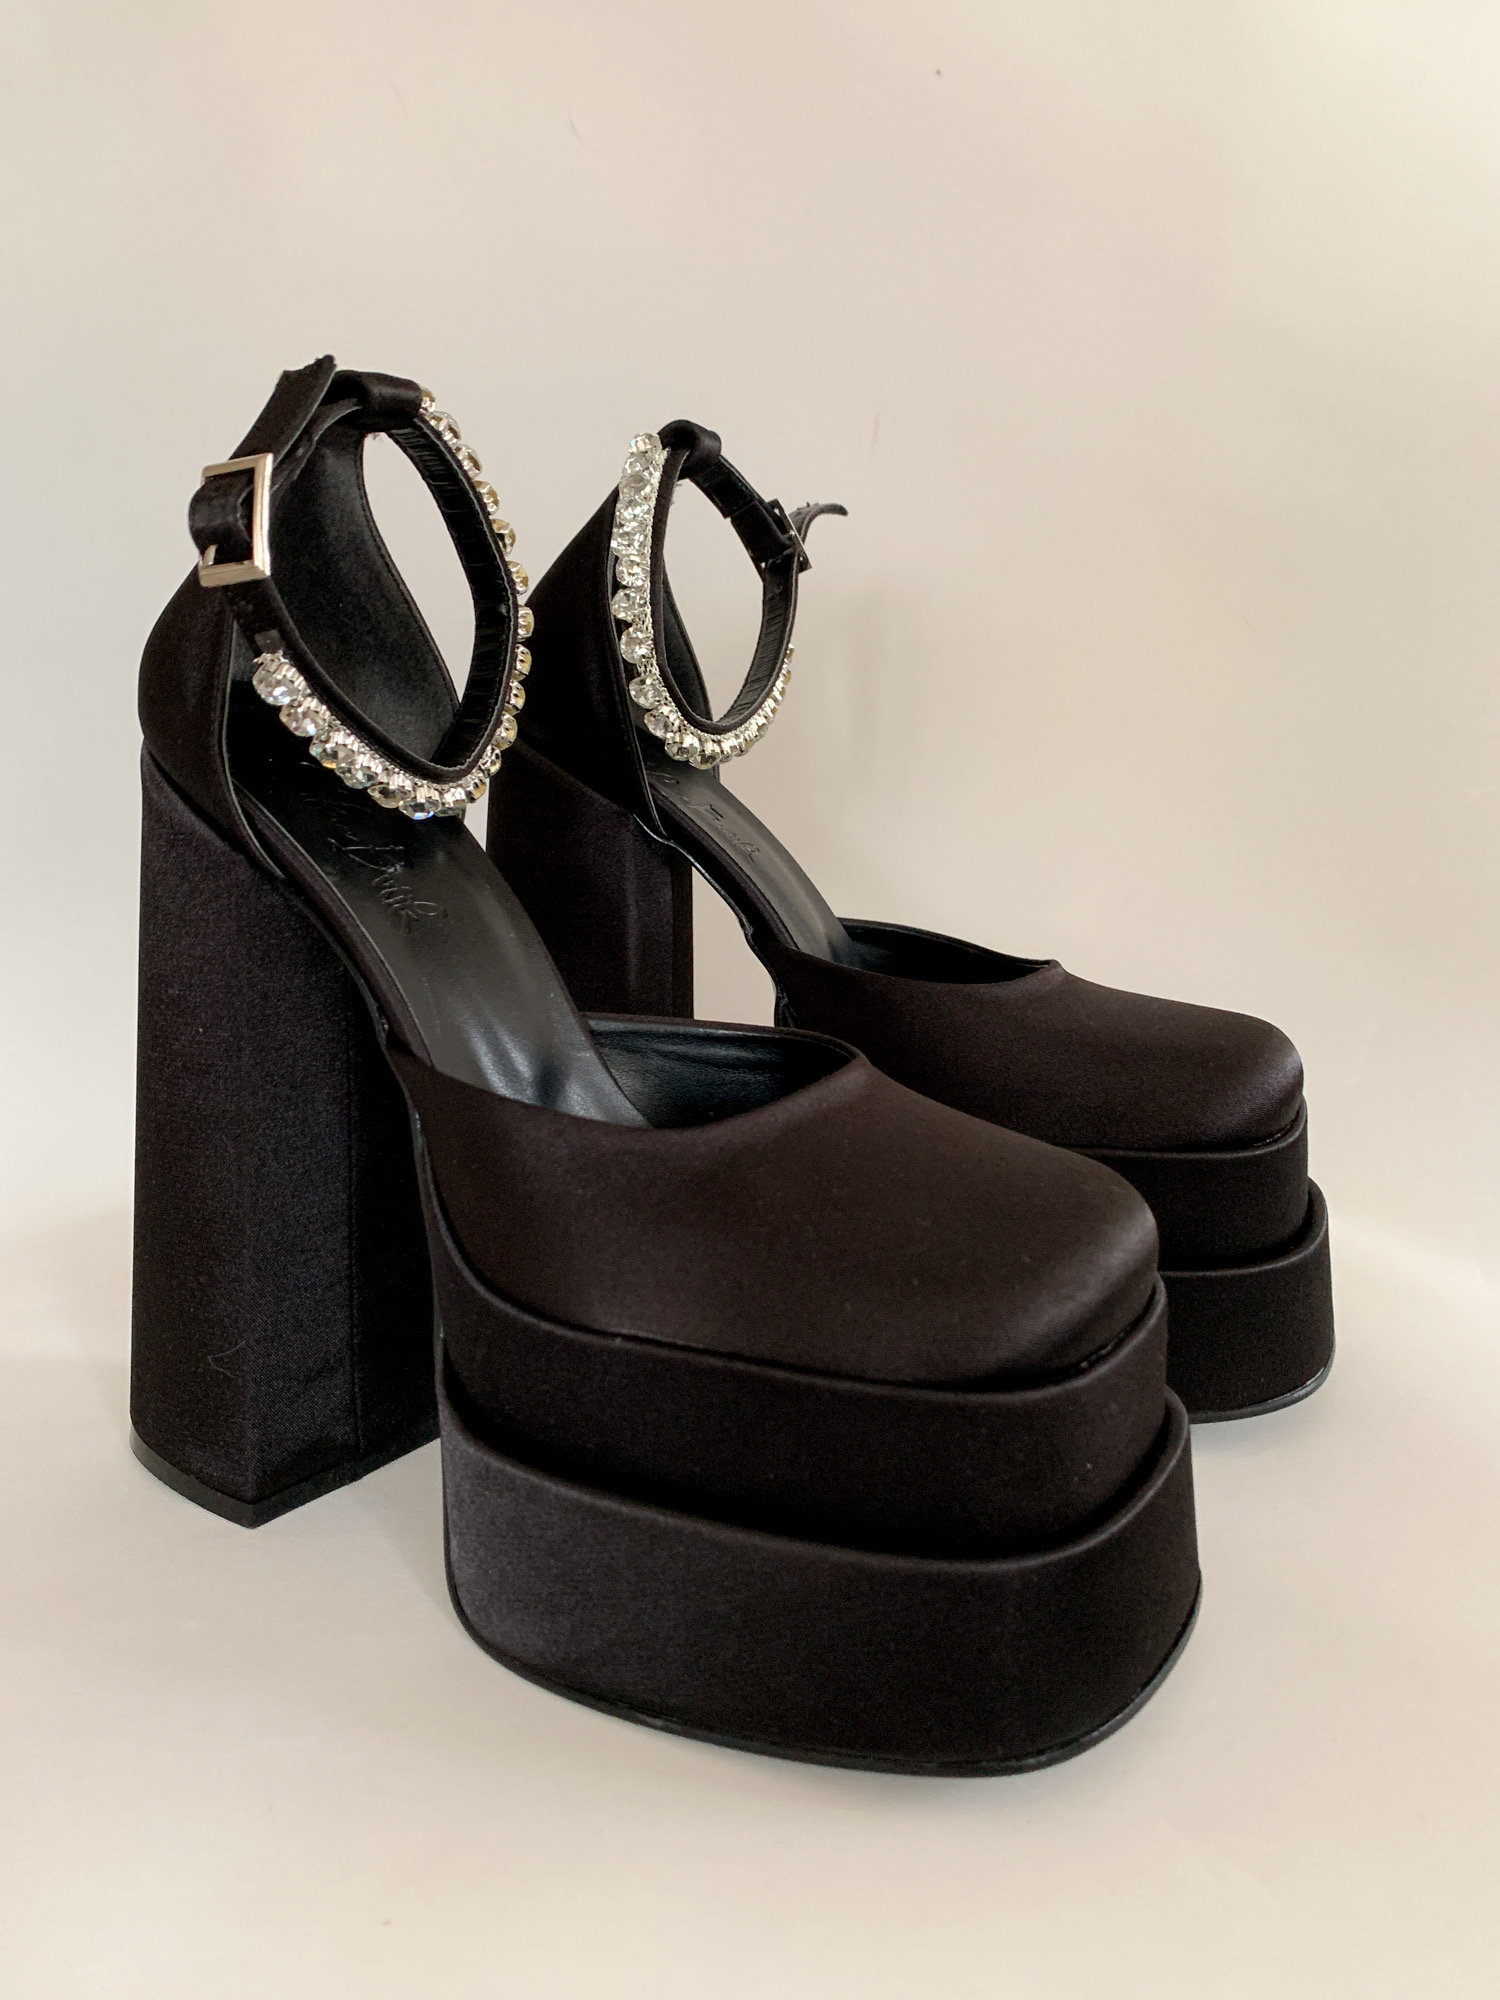 Black Spiked Rubber Platform Sandals  Platform clogs, Black platform  shoes, Platform high heel shoes